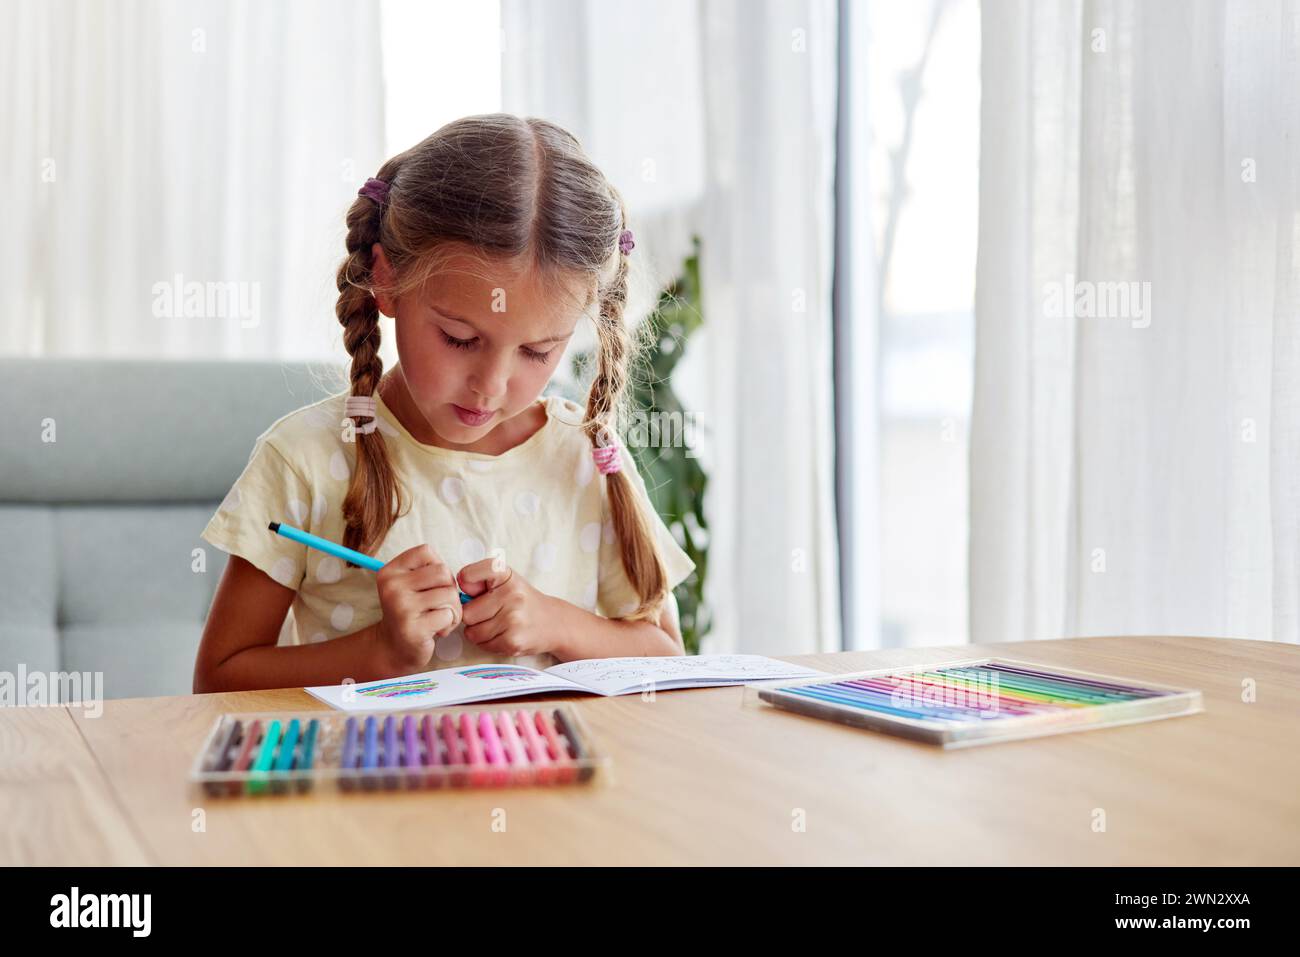 La ragazza con trecce sceglie una penna con punta in feltro brillante per disegnare l'immagine Foto Stock